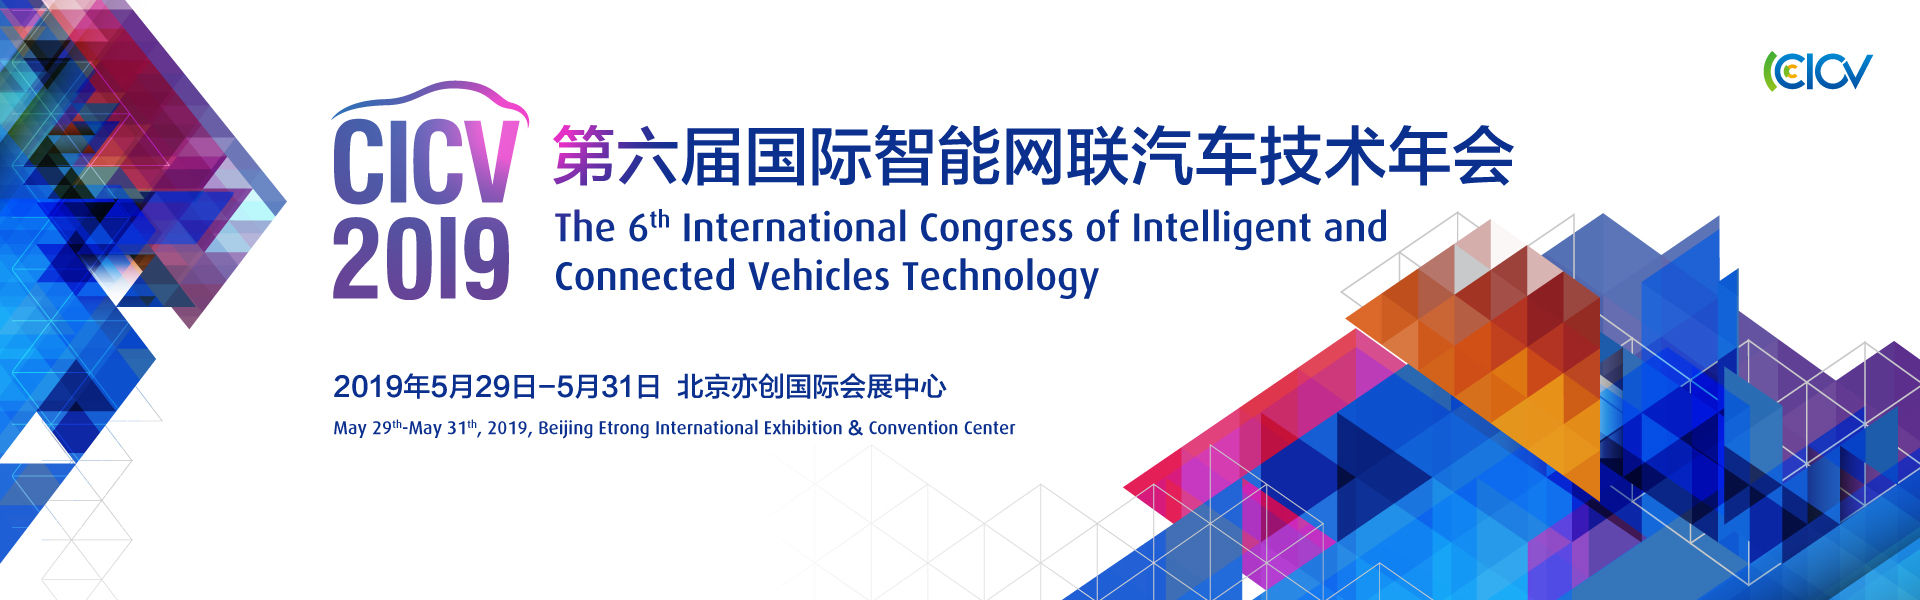 第六届国际智能网联汽车技术年会